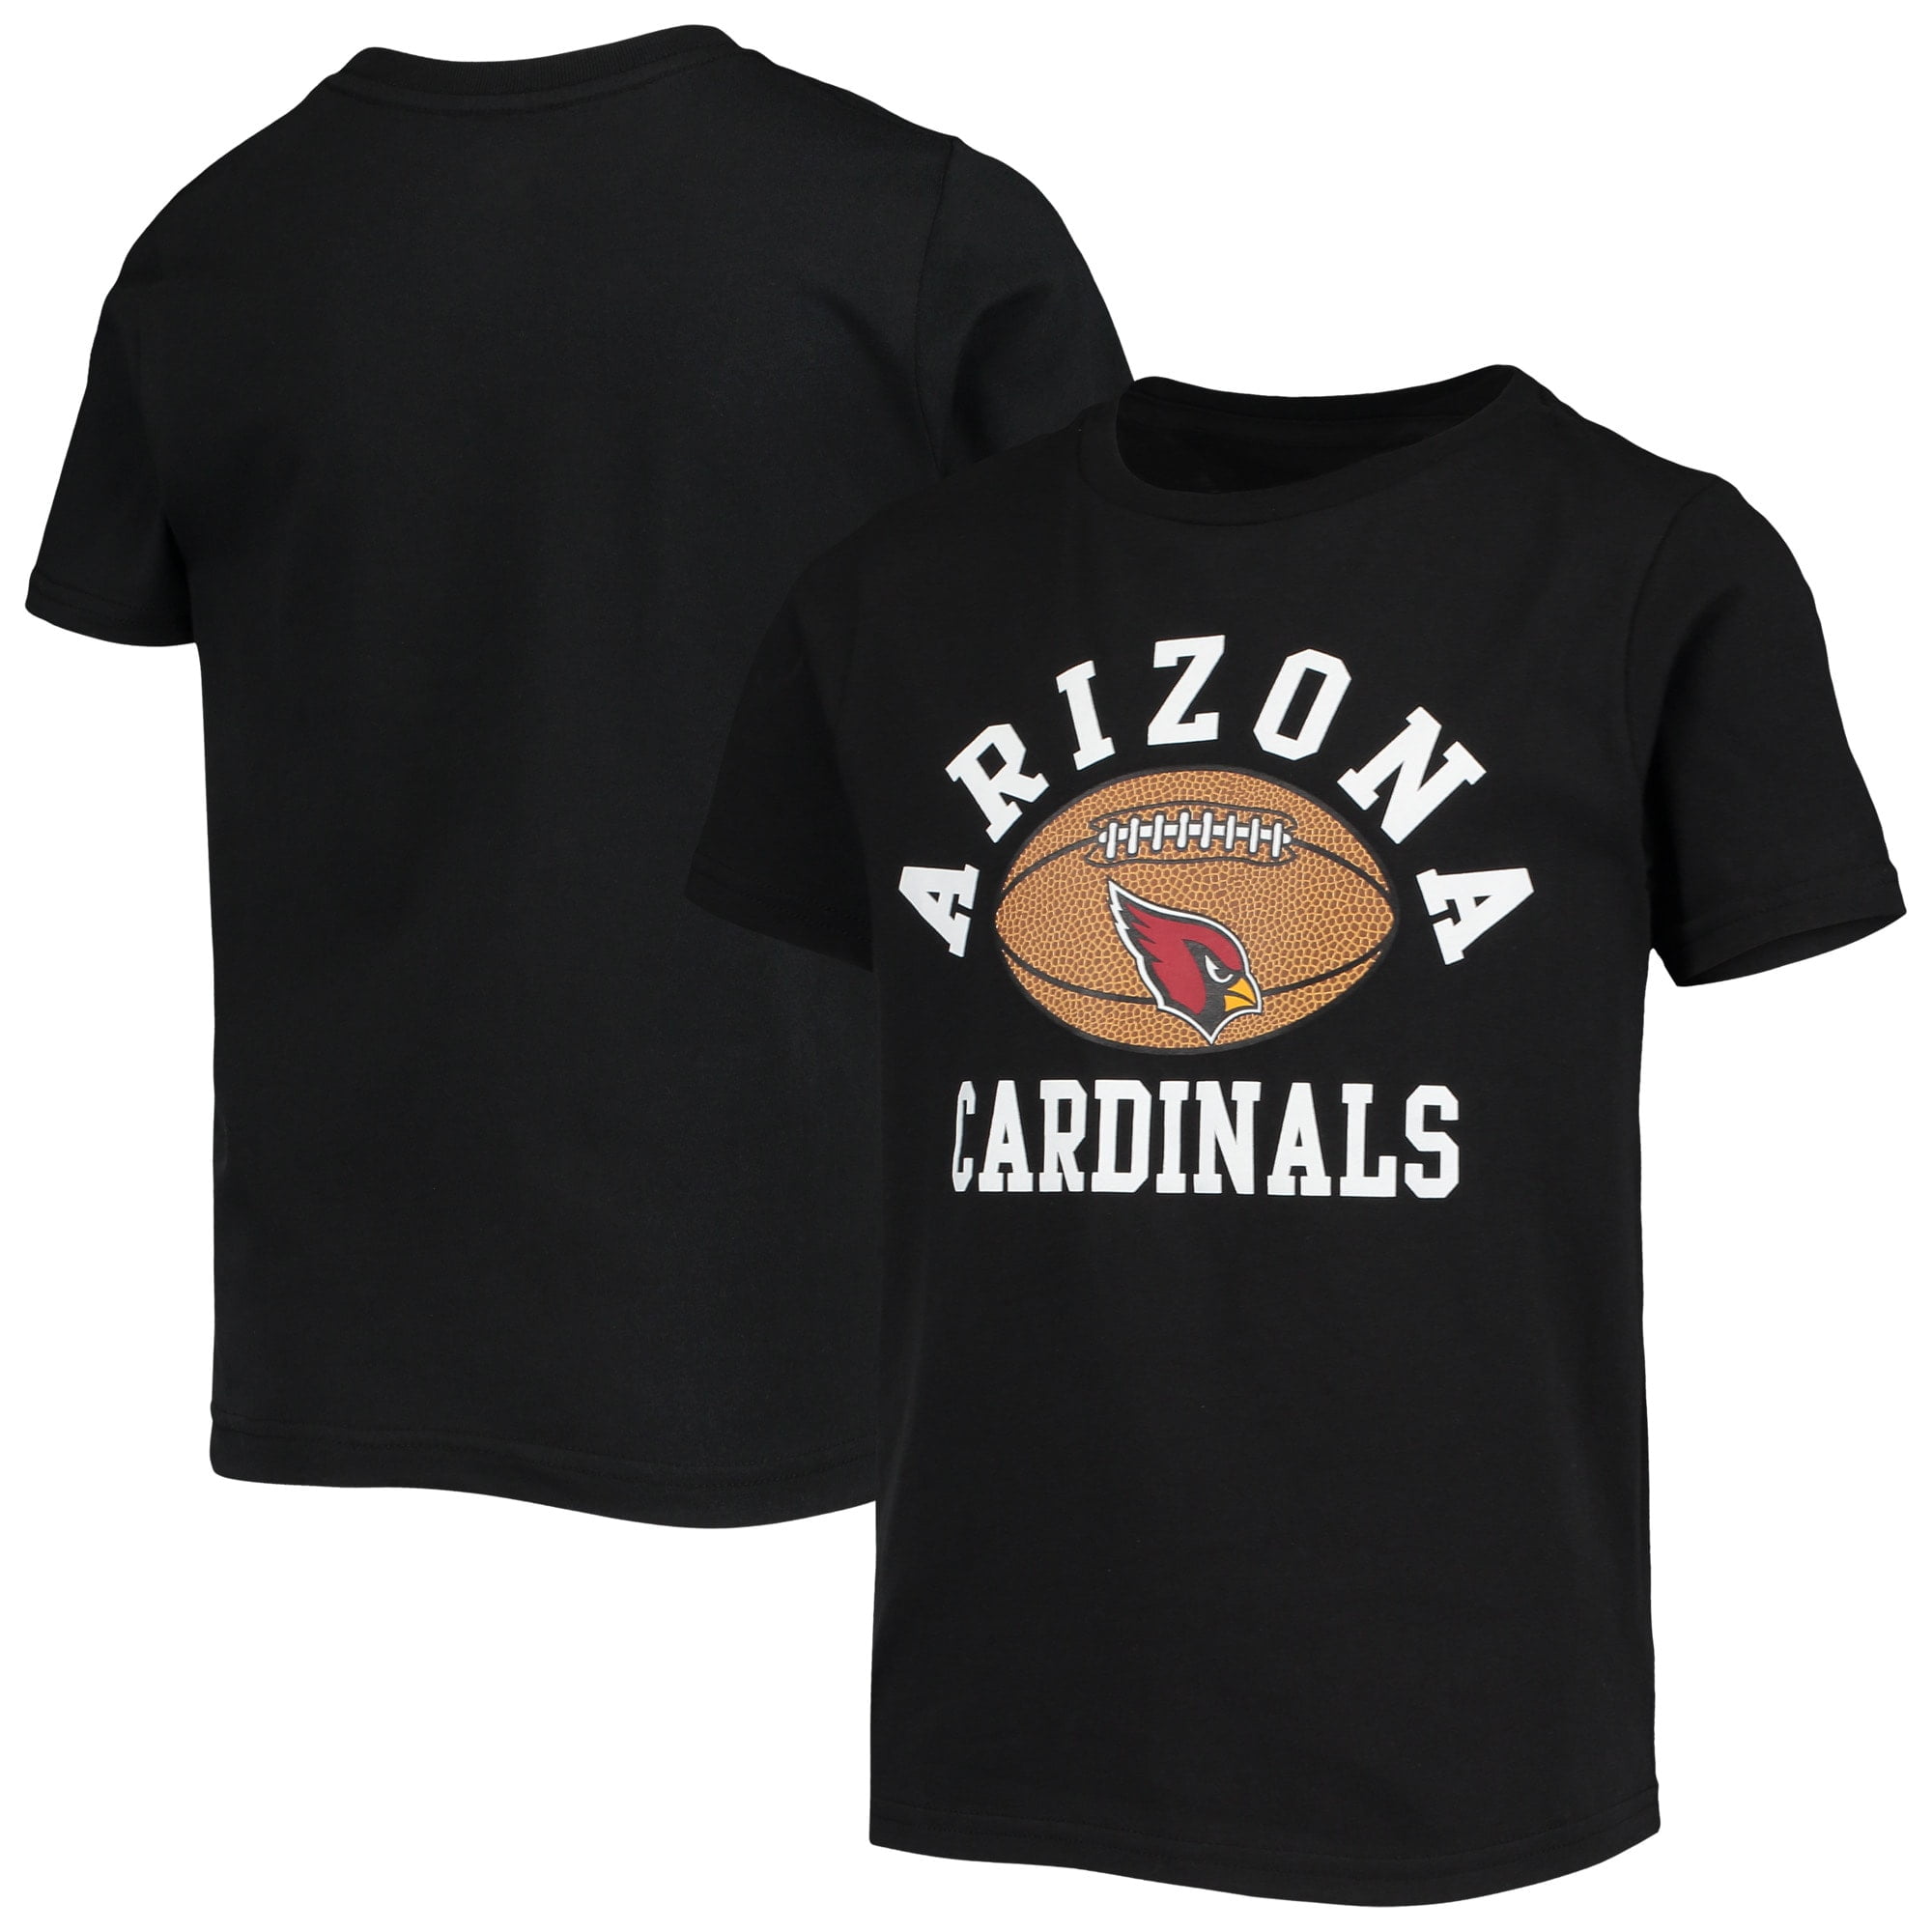 arizona cardinals infant jersey